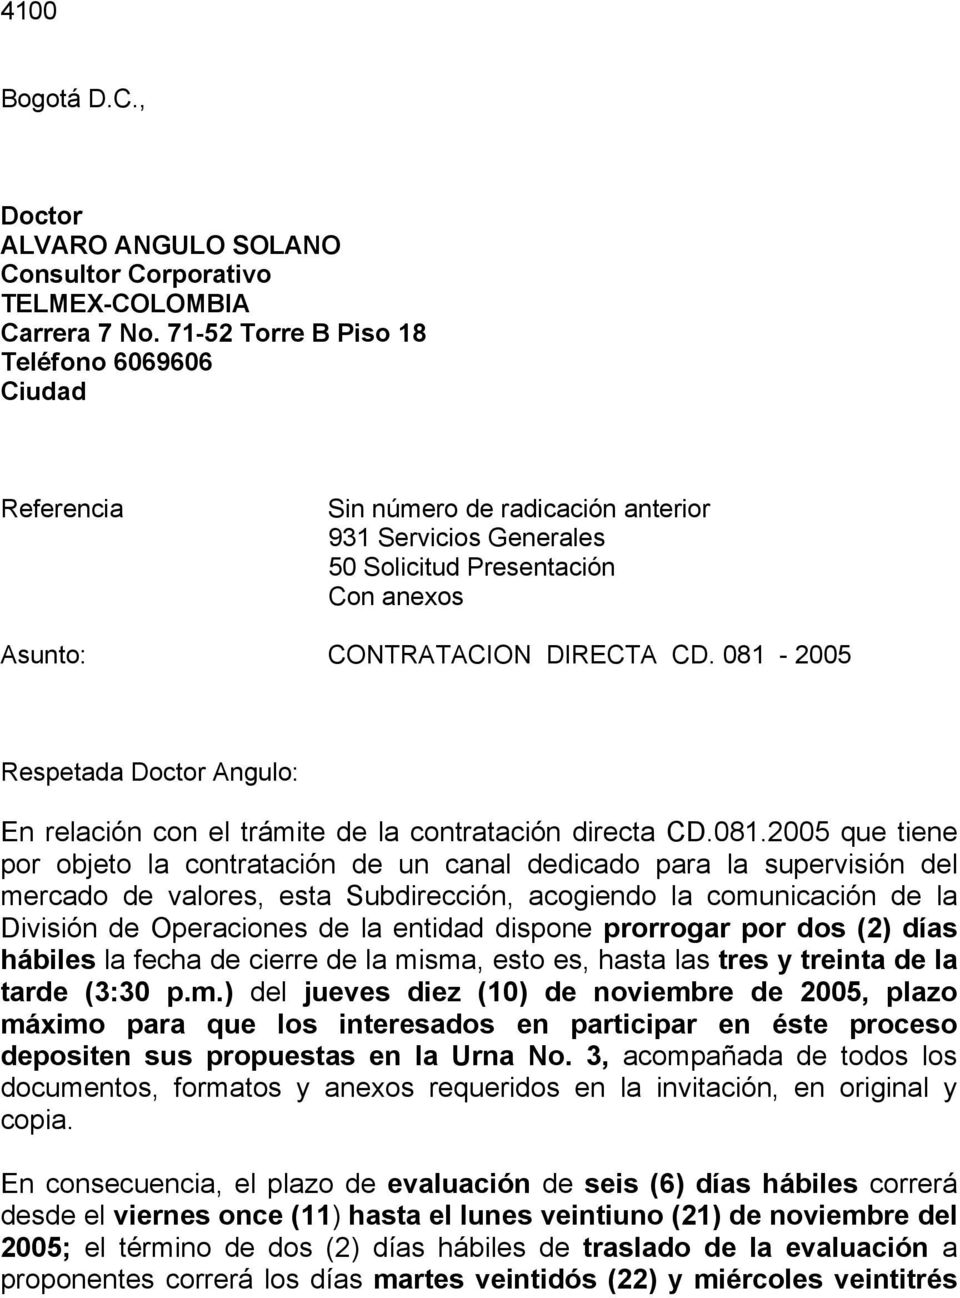 081-2005 Respetada Doctor Angulo: En relación con el trámite de la contratación directa CD.081.2005 que tiene por objeto la contratación de un canal dedicado para la supervisión del mercado de